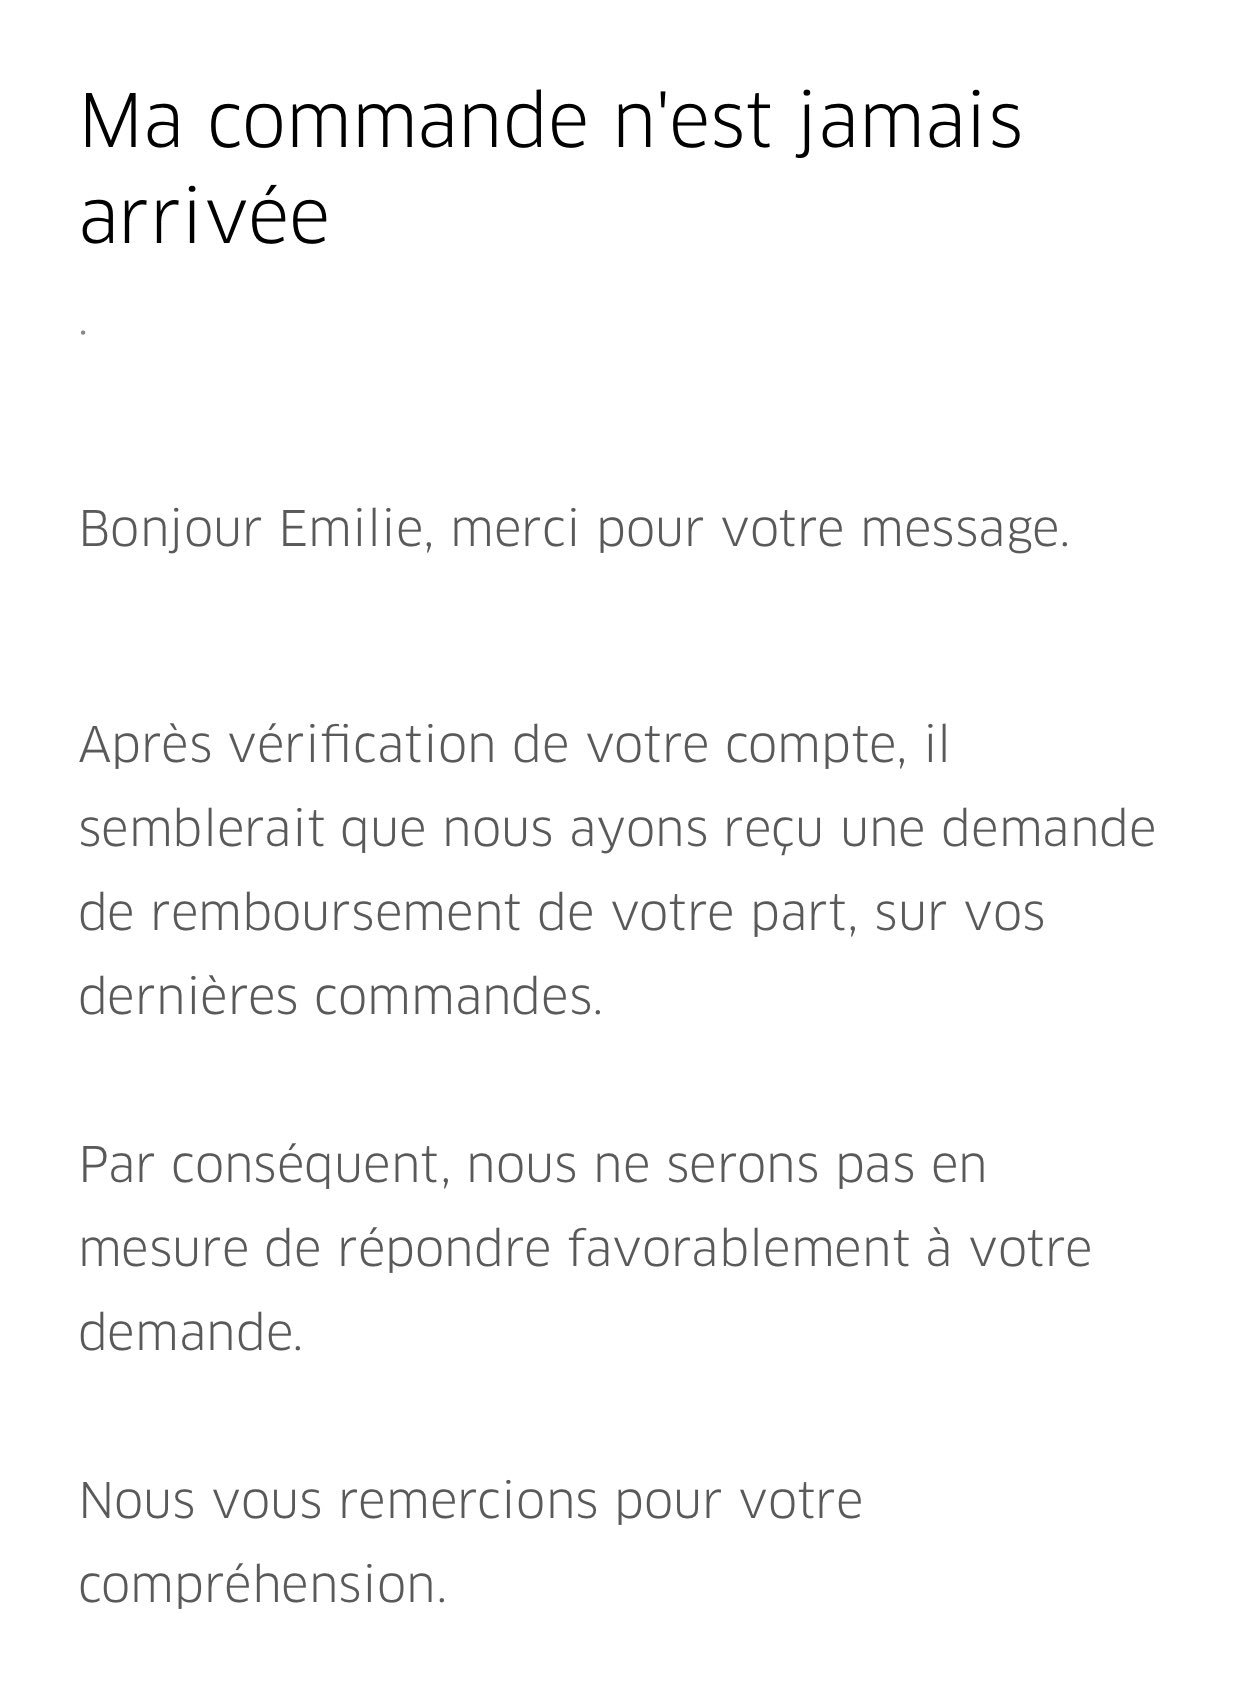 Emilie Mazoyer on X: 2ème fois que je commande sur @UberFR